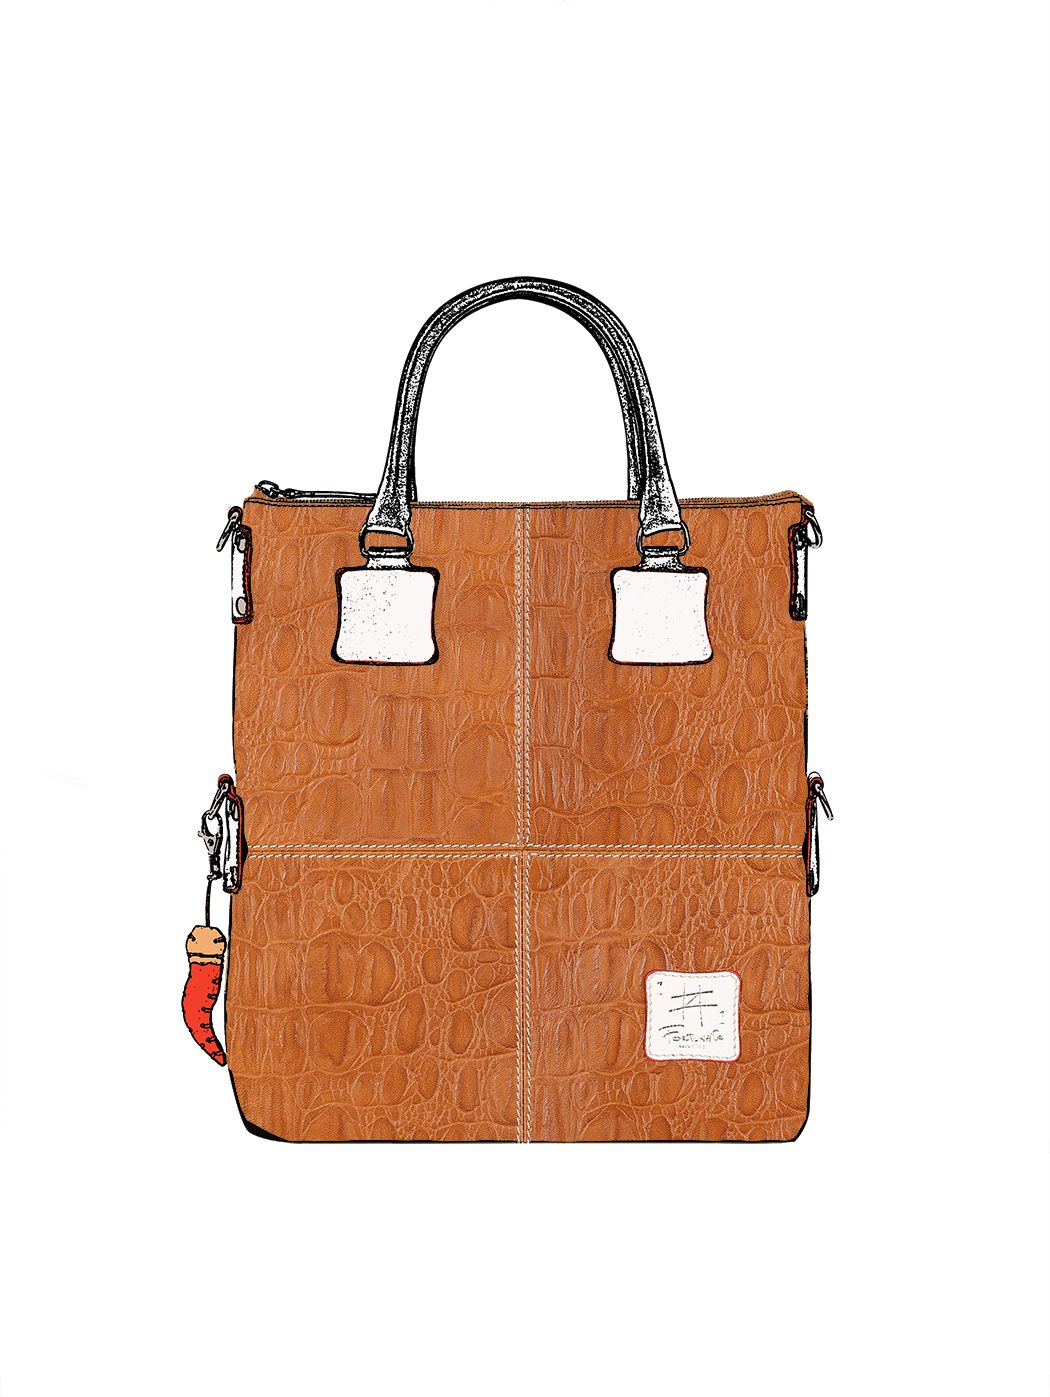 Дизайнерская сумка из коллекции Fortunata коричневого цвета